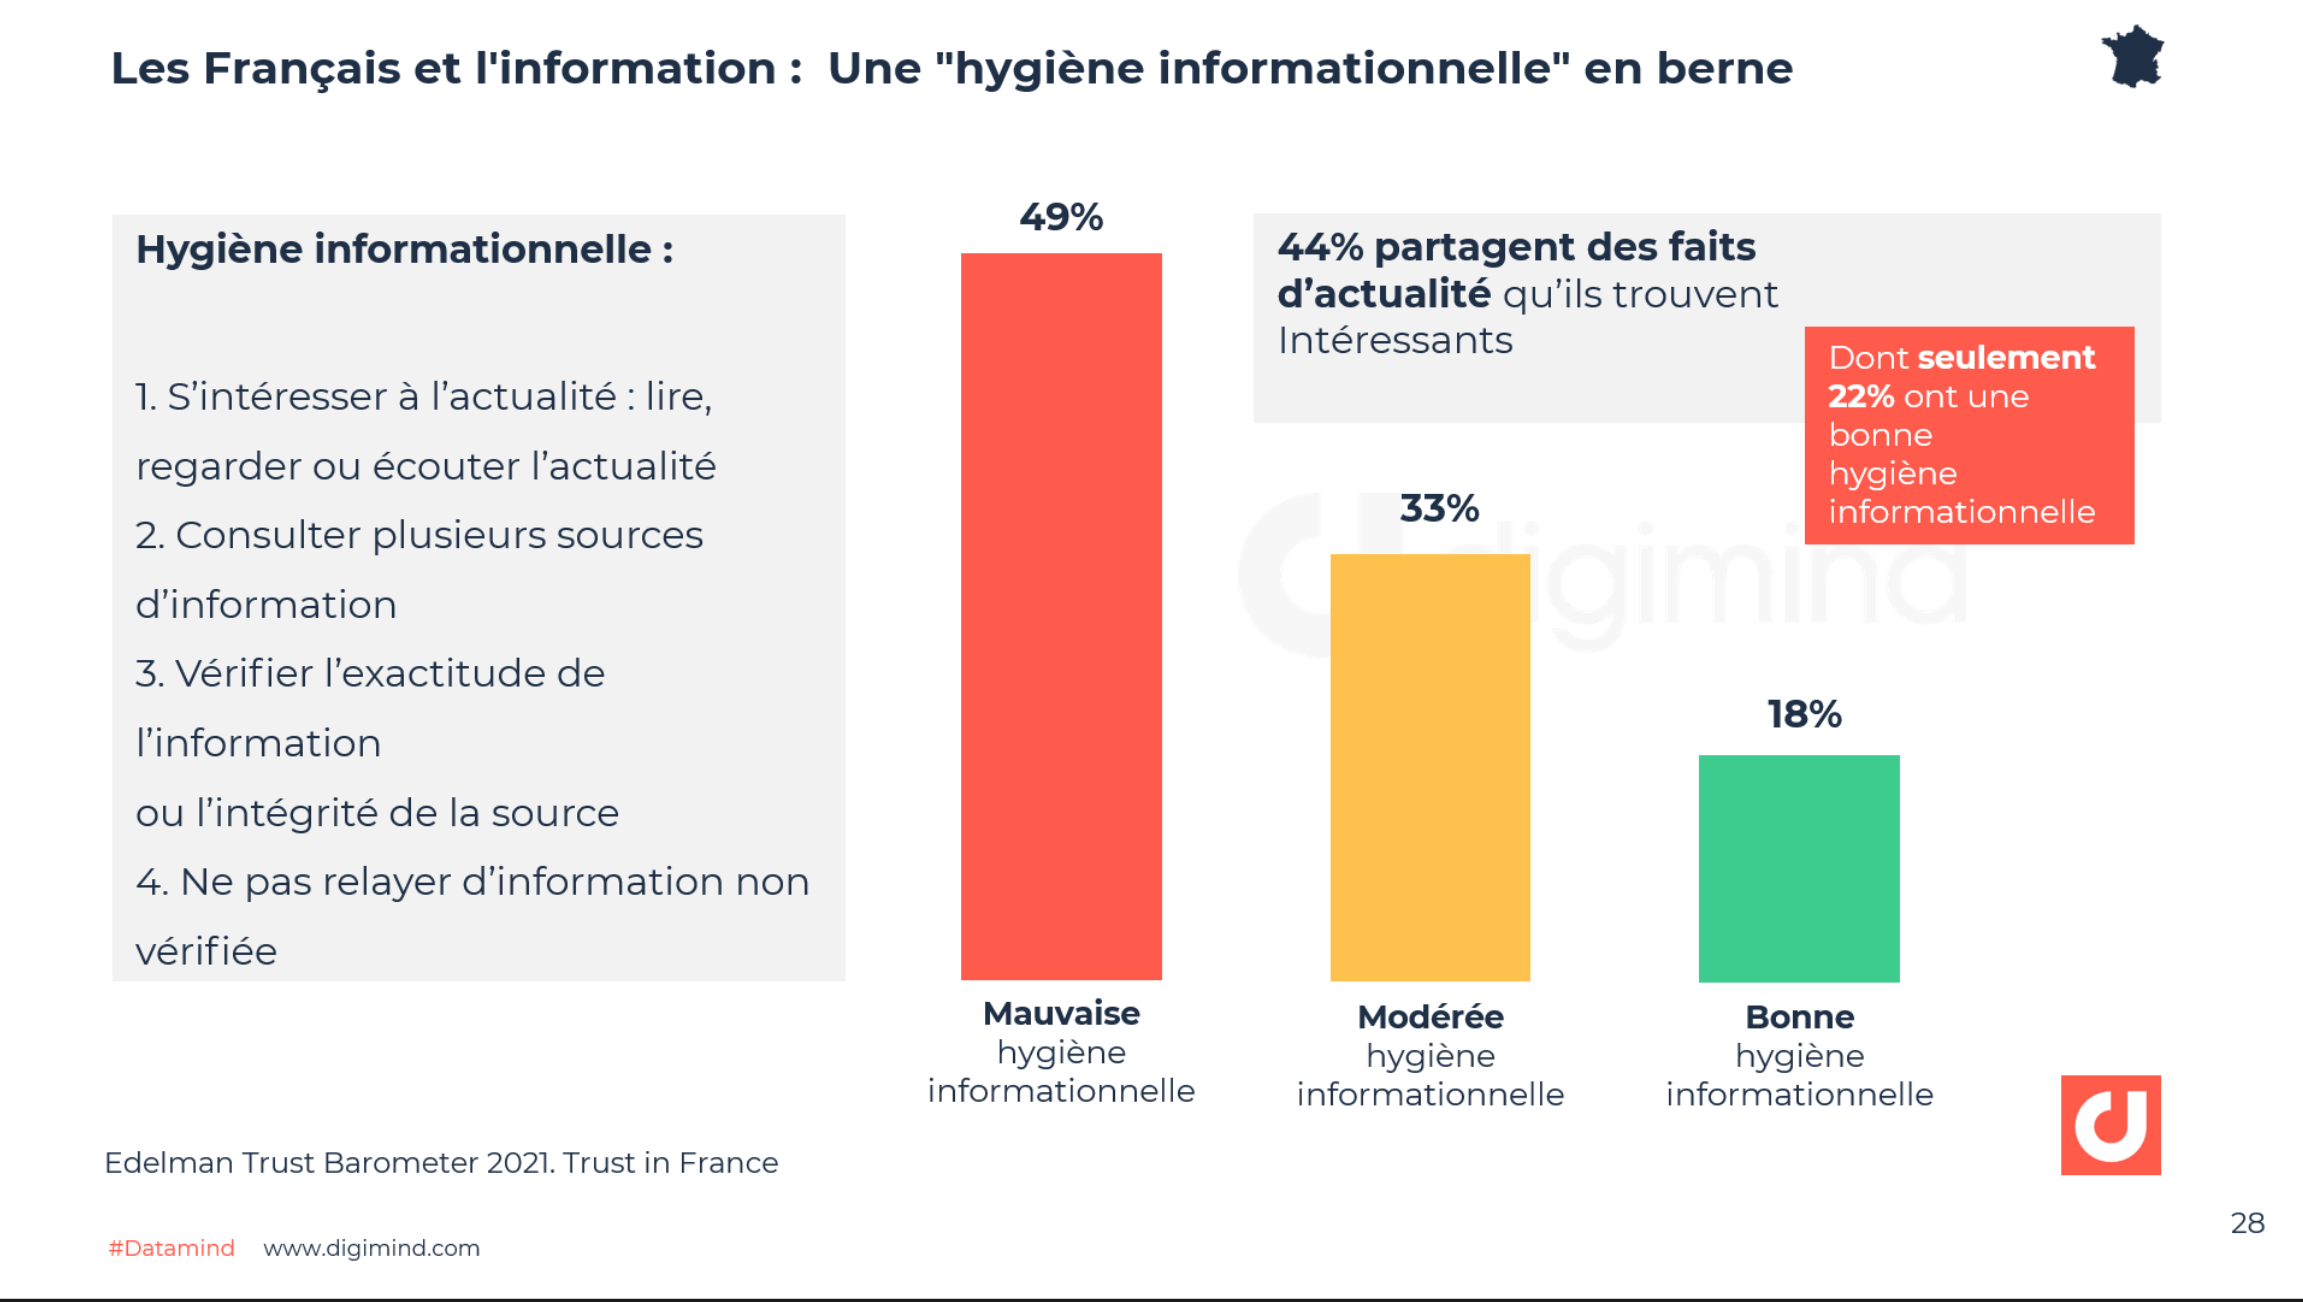 Les Français et l'information :  Une "hygiène informationnelle" en berne - Edelman Trust Barometer 2021. Trust in France